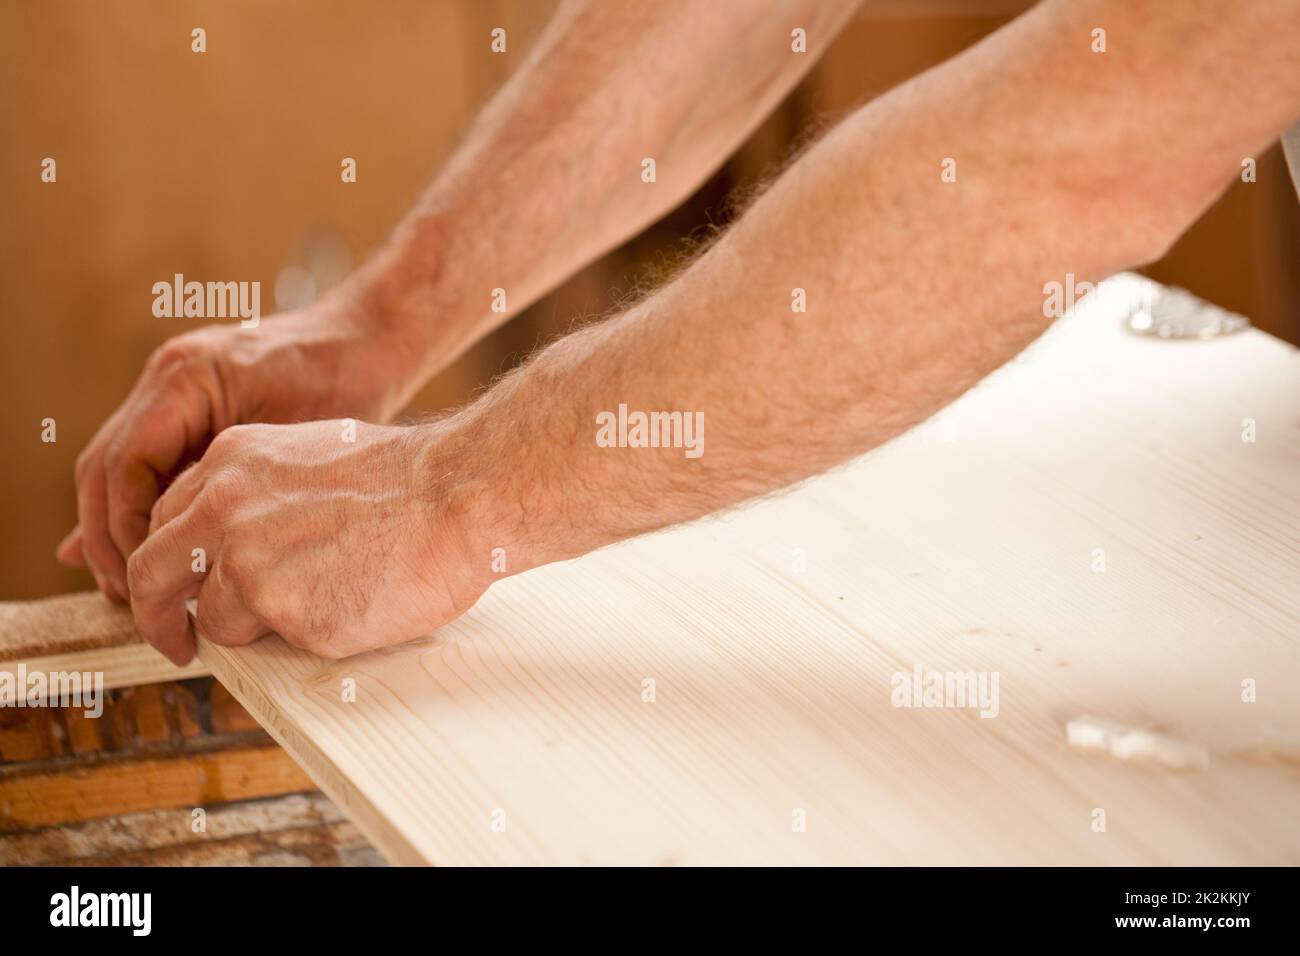 Die Hand eines Mannes, der Holz bearbeitet Stockfoto